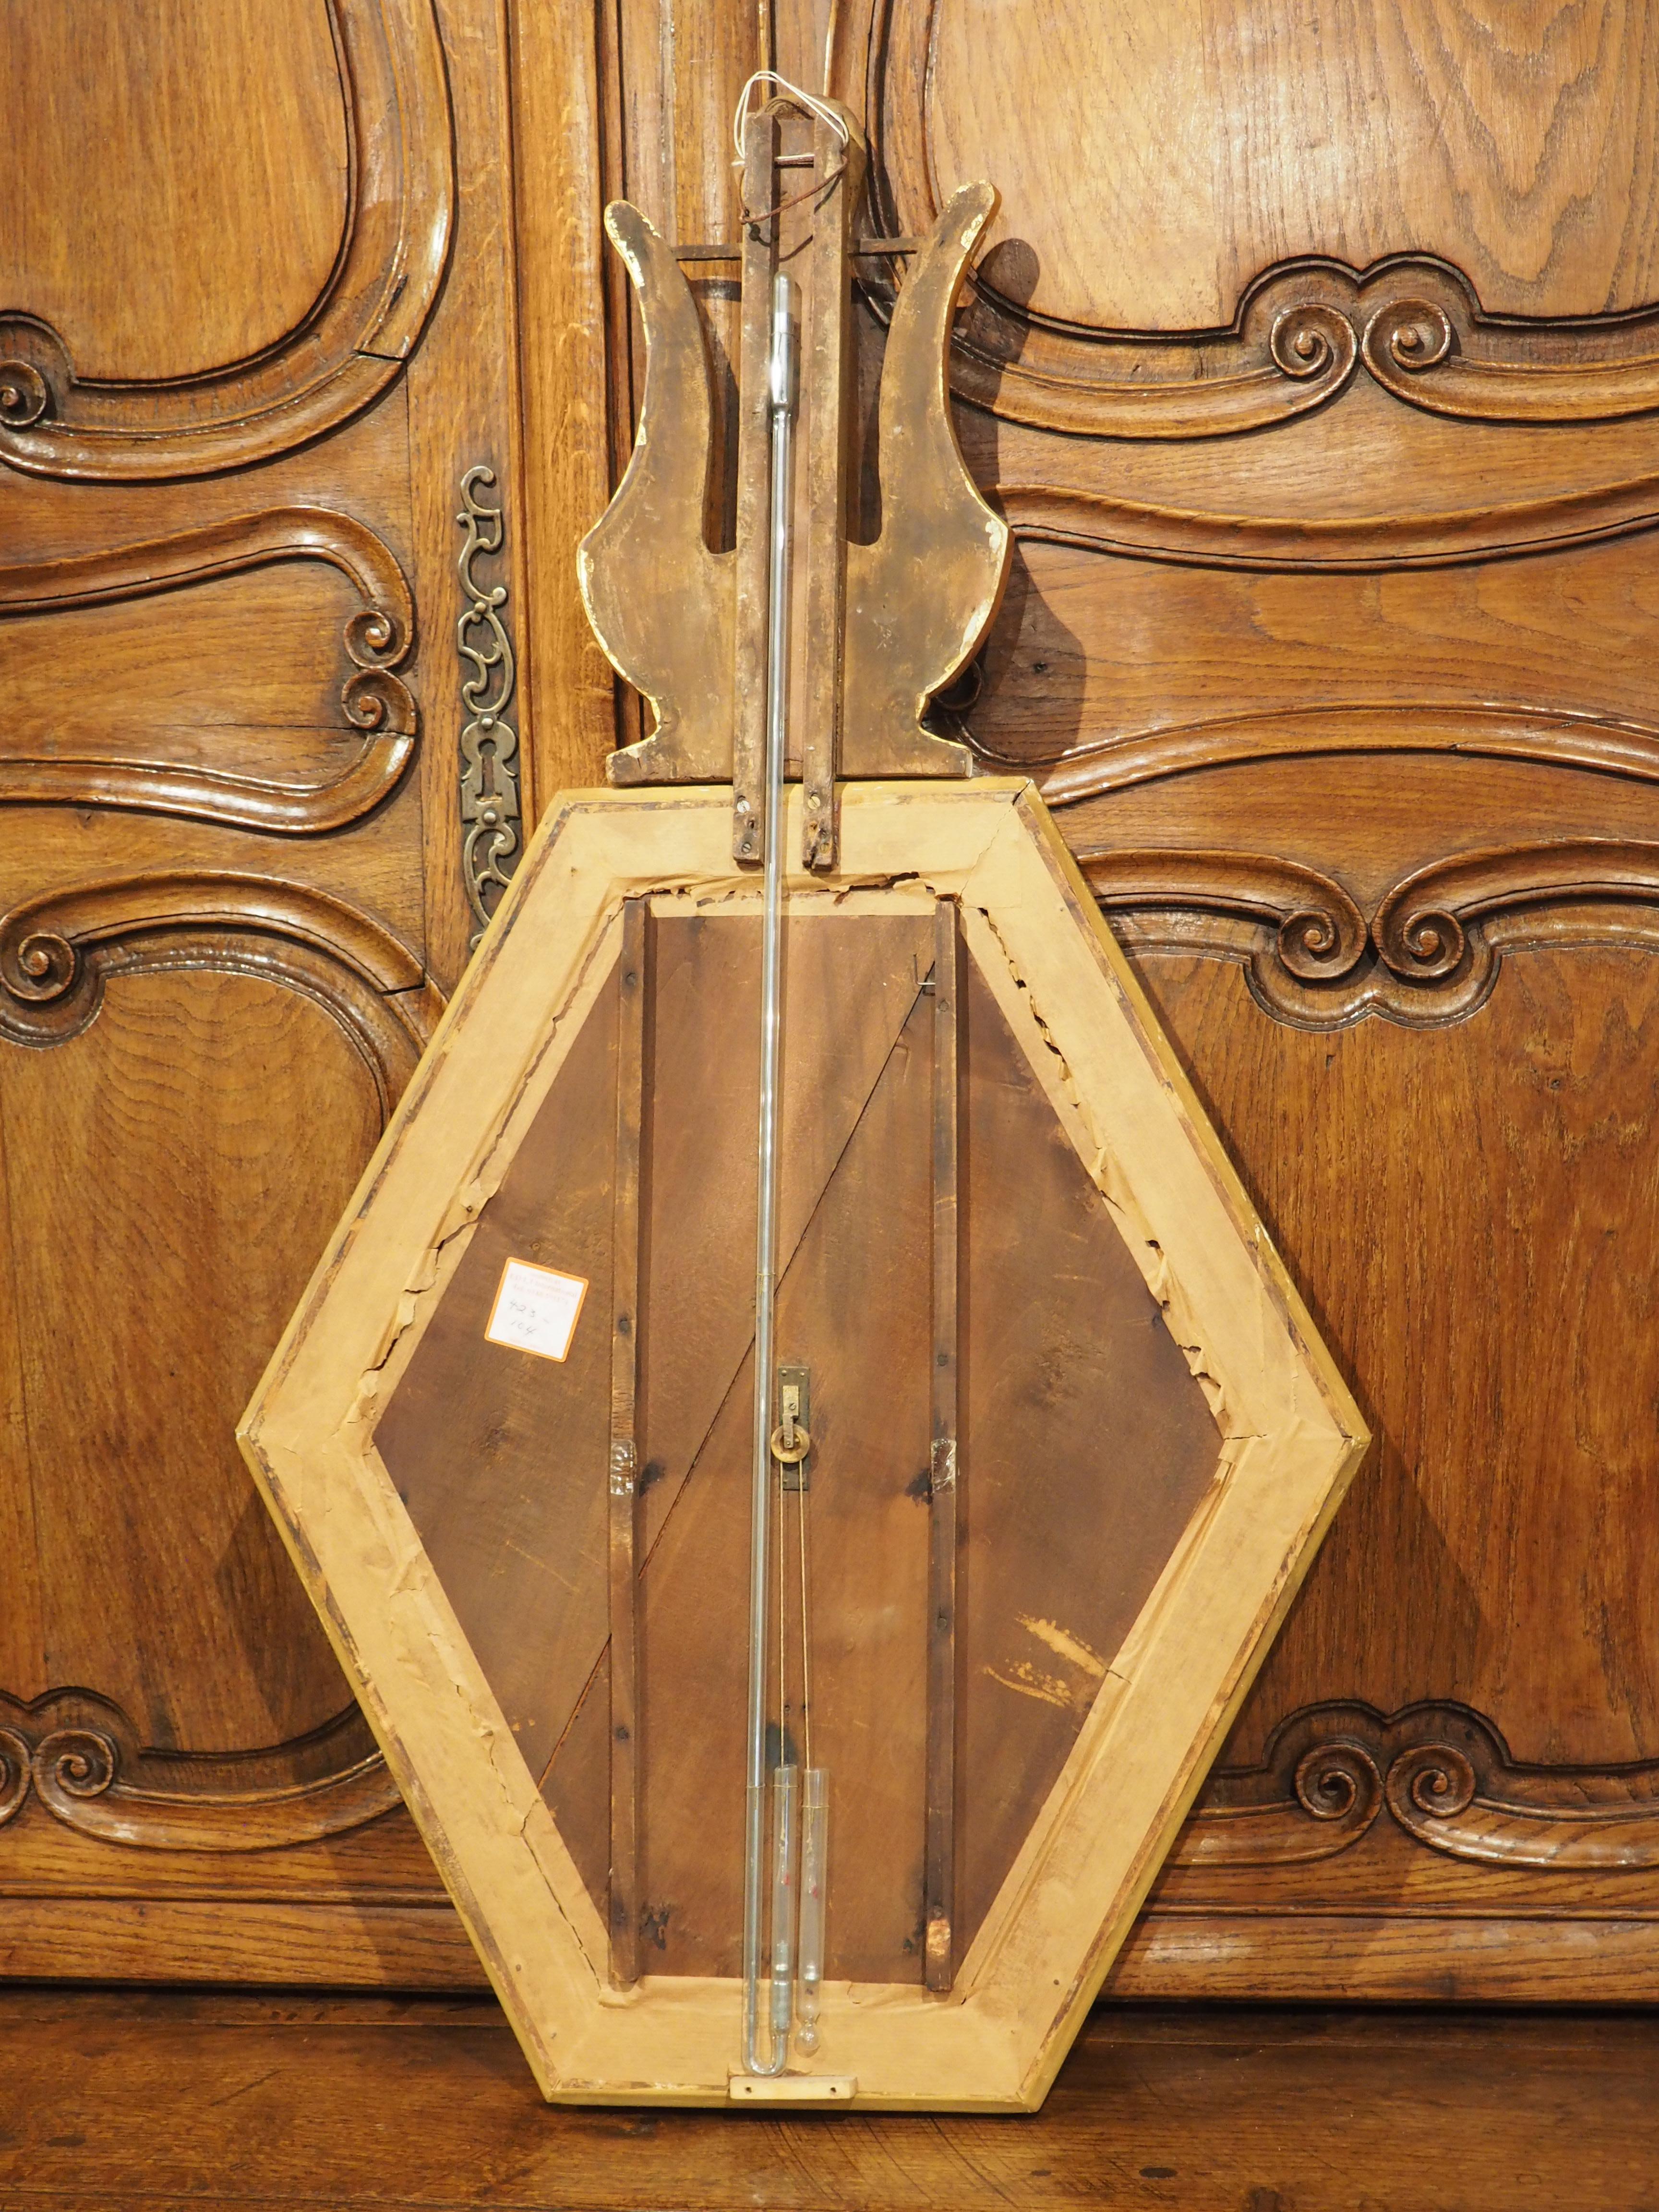 Bien qu'il ait été construit vers 1815 comme instrument scientifique, ce baromètre français en bois doré est d'une grande beauté. Notre baromètre exquis présente une composition unique, avec un cadran hexagonal allongé surmonté d'une lyre stylisée.